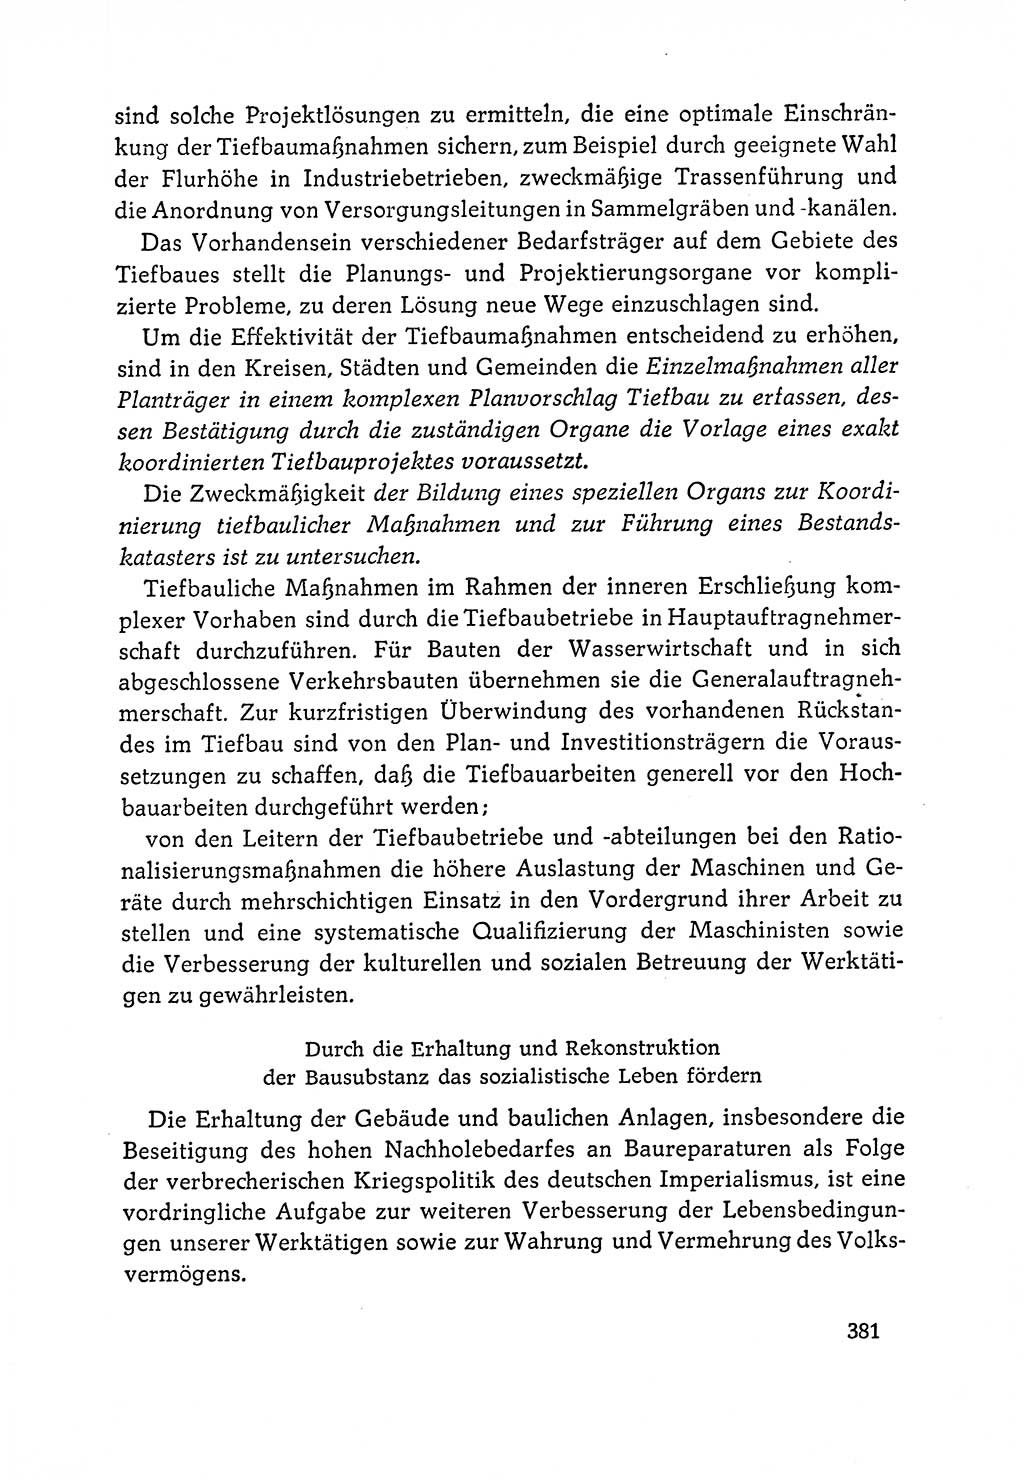 Dokumente der Sozialistischen Einheitspartei Deutschlands (SED) [Deutsche Demokratische Republik (DDR)] 1964-1965, Seite 381 (Dok. SED DDR 1964-1965, S. 381)